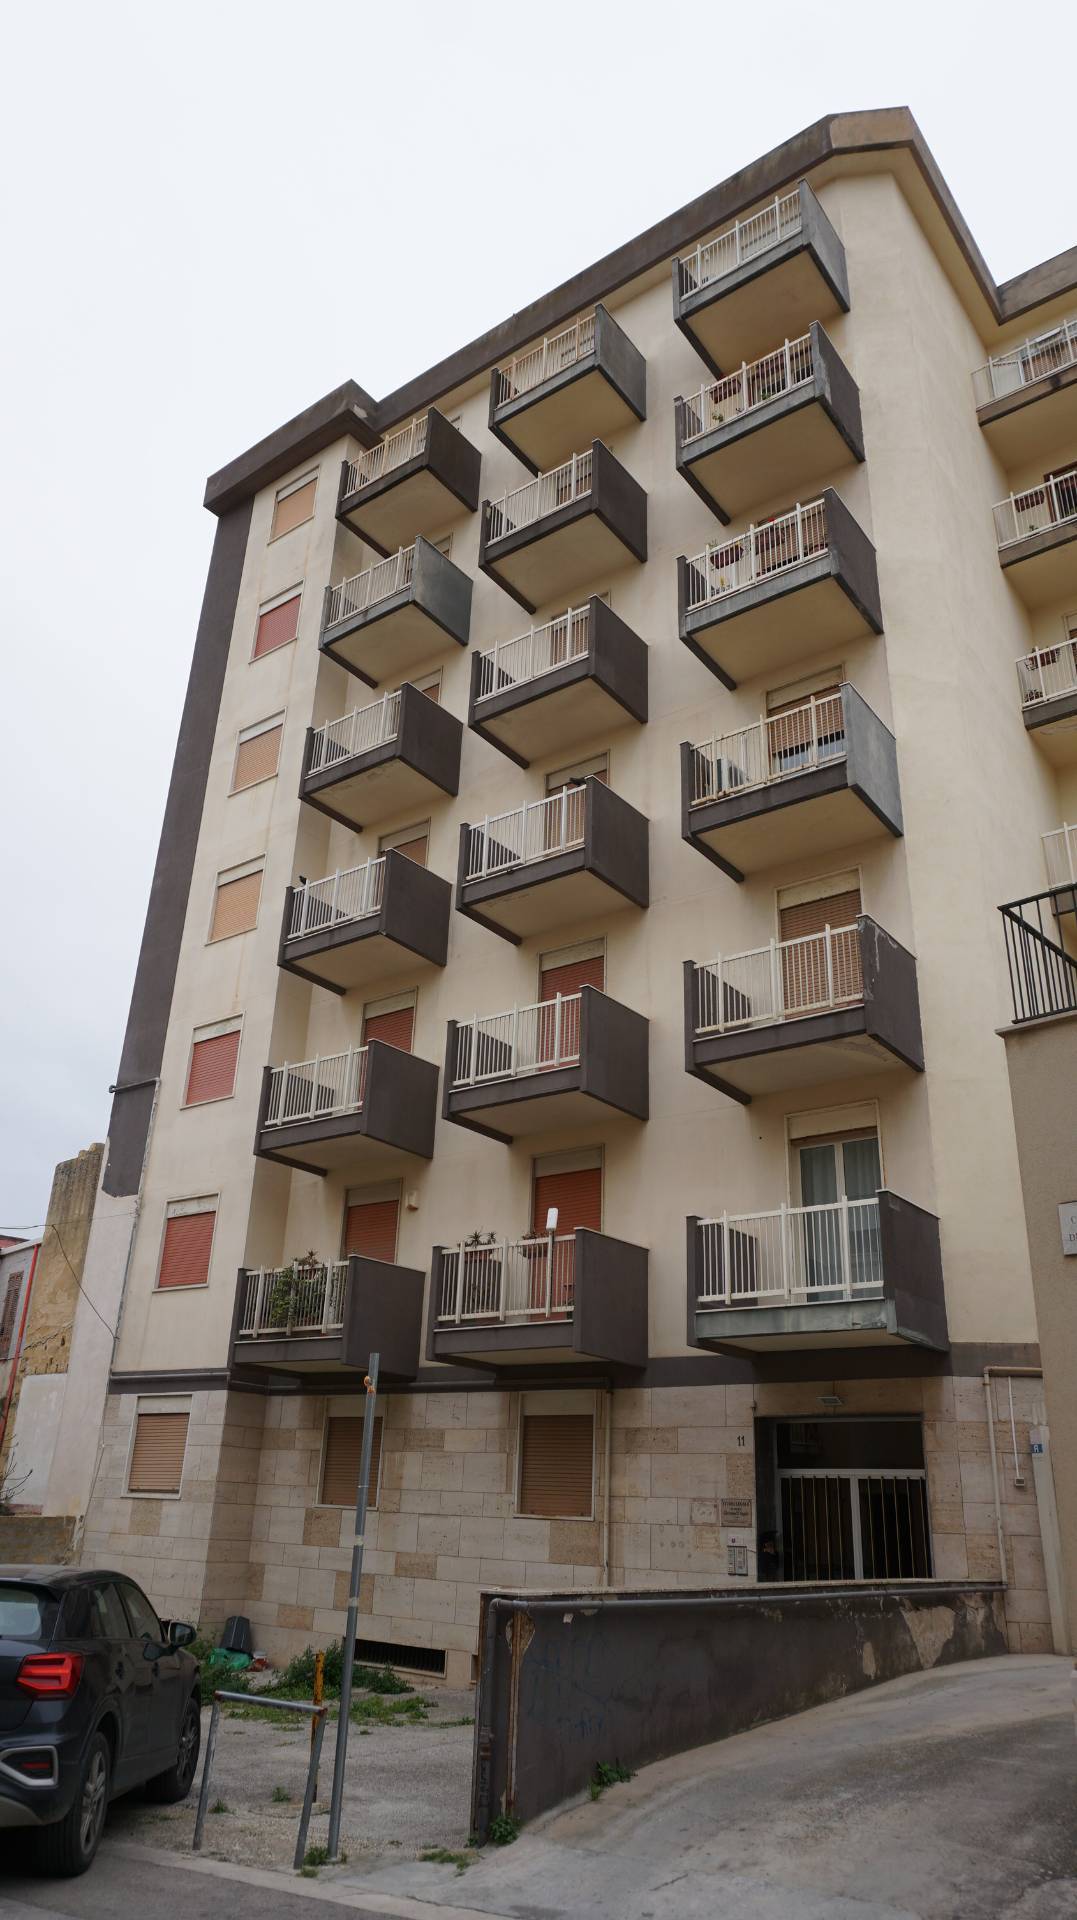 Appartamento in vendita a Castelvetrano, 5 locali, zona Località: CastelvetranoCitt?, prezzo € 78.000 | PortaleAgenzieImmobiliari.it